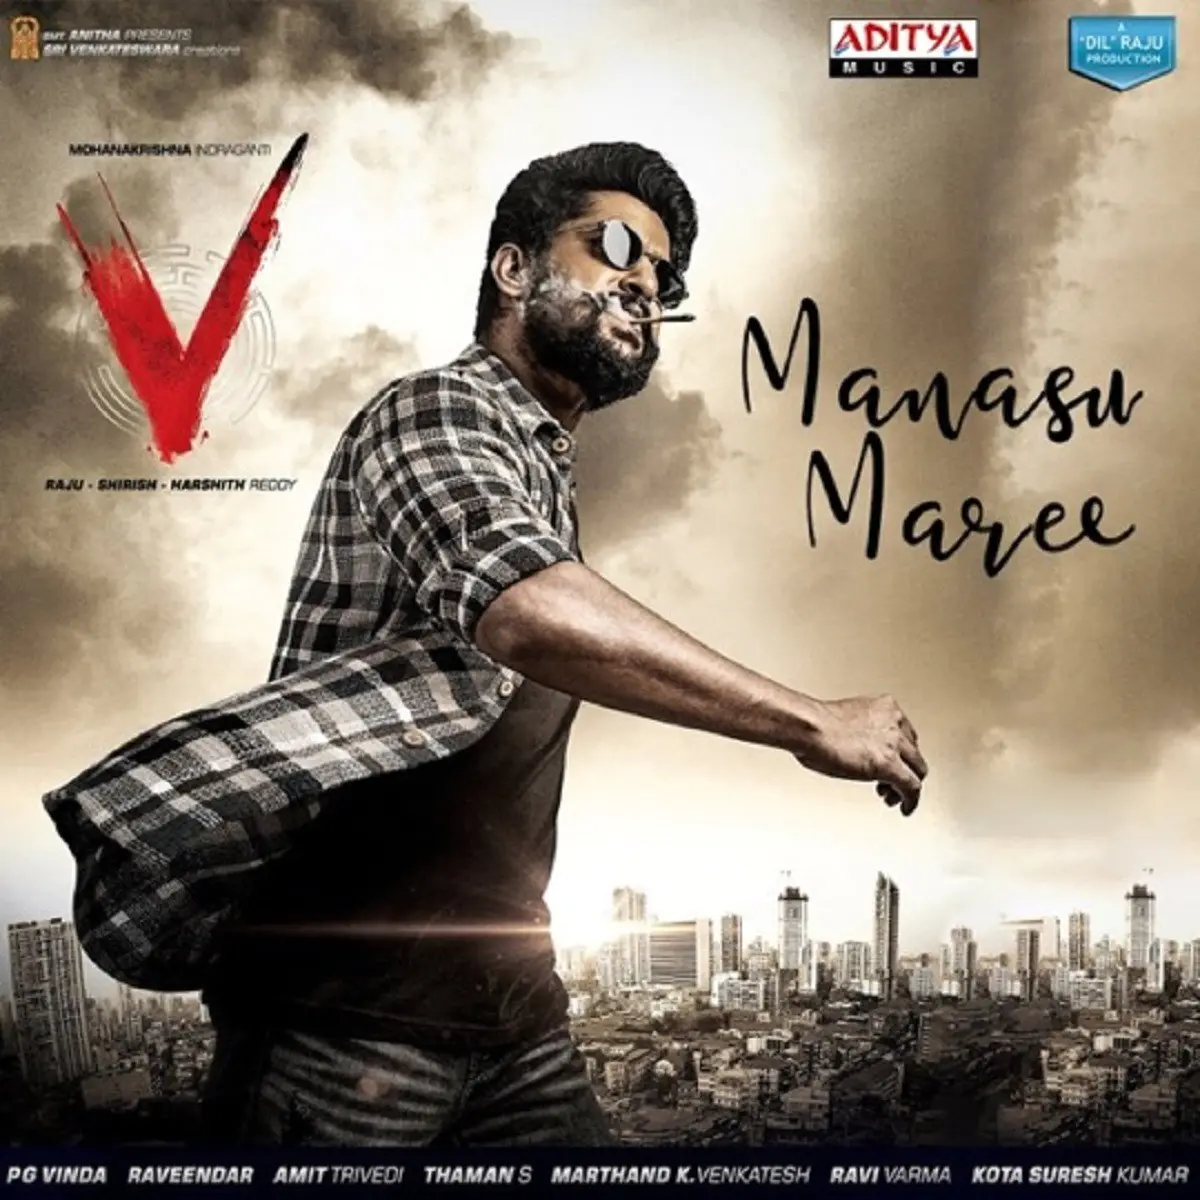 Manasu Maree Lyrics in Telugu, V Manasu Maree Song Lyrics in ...